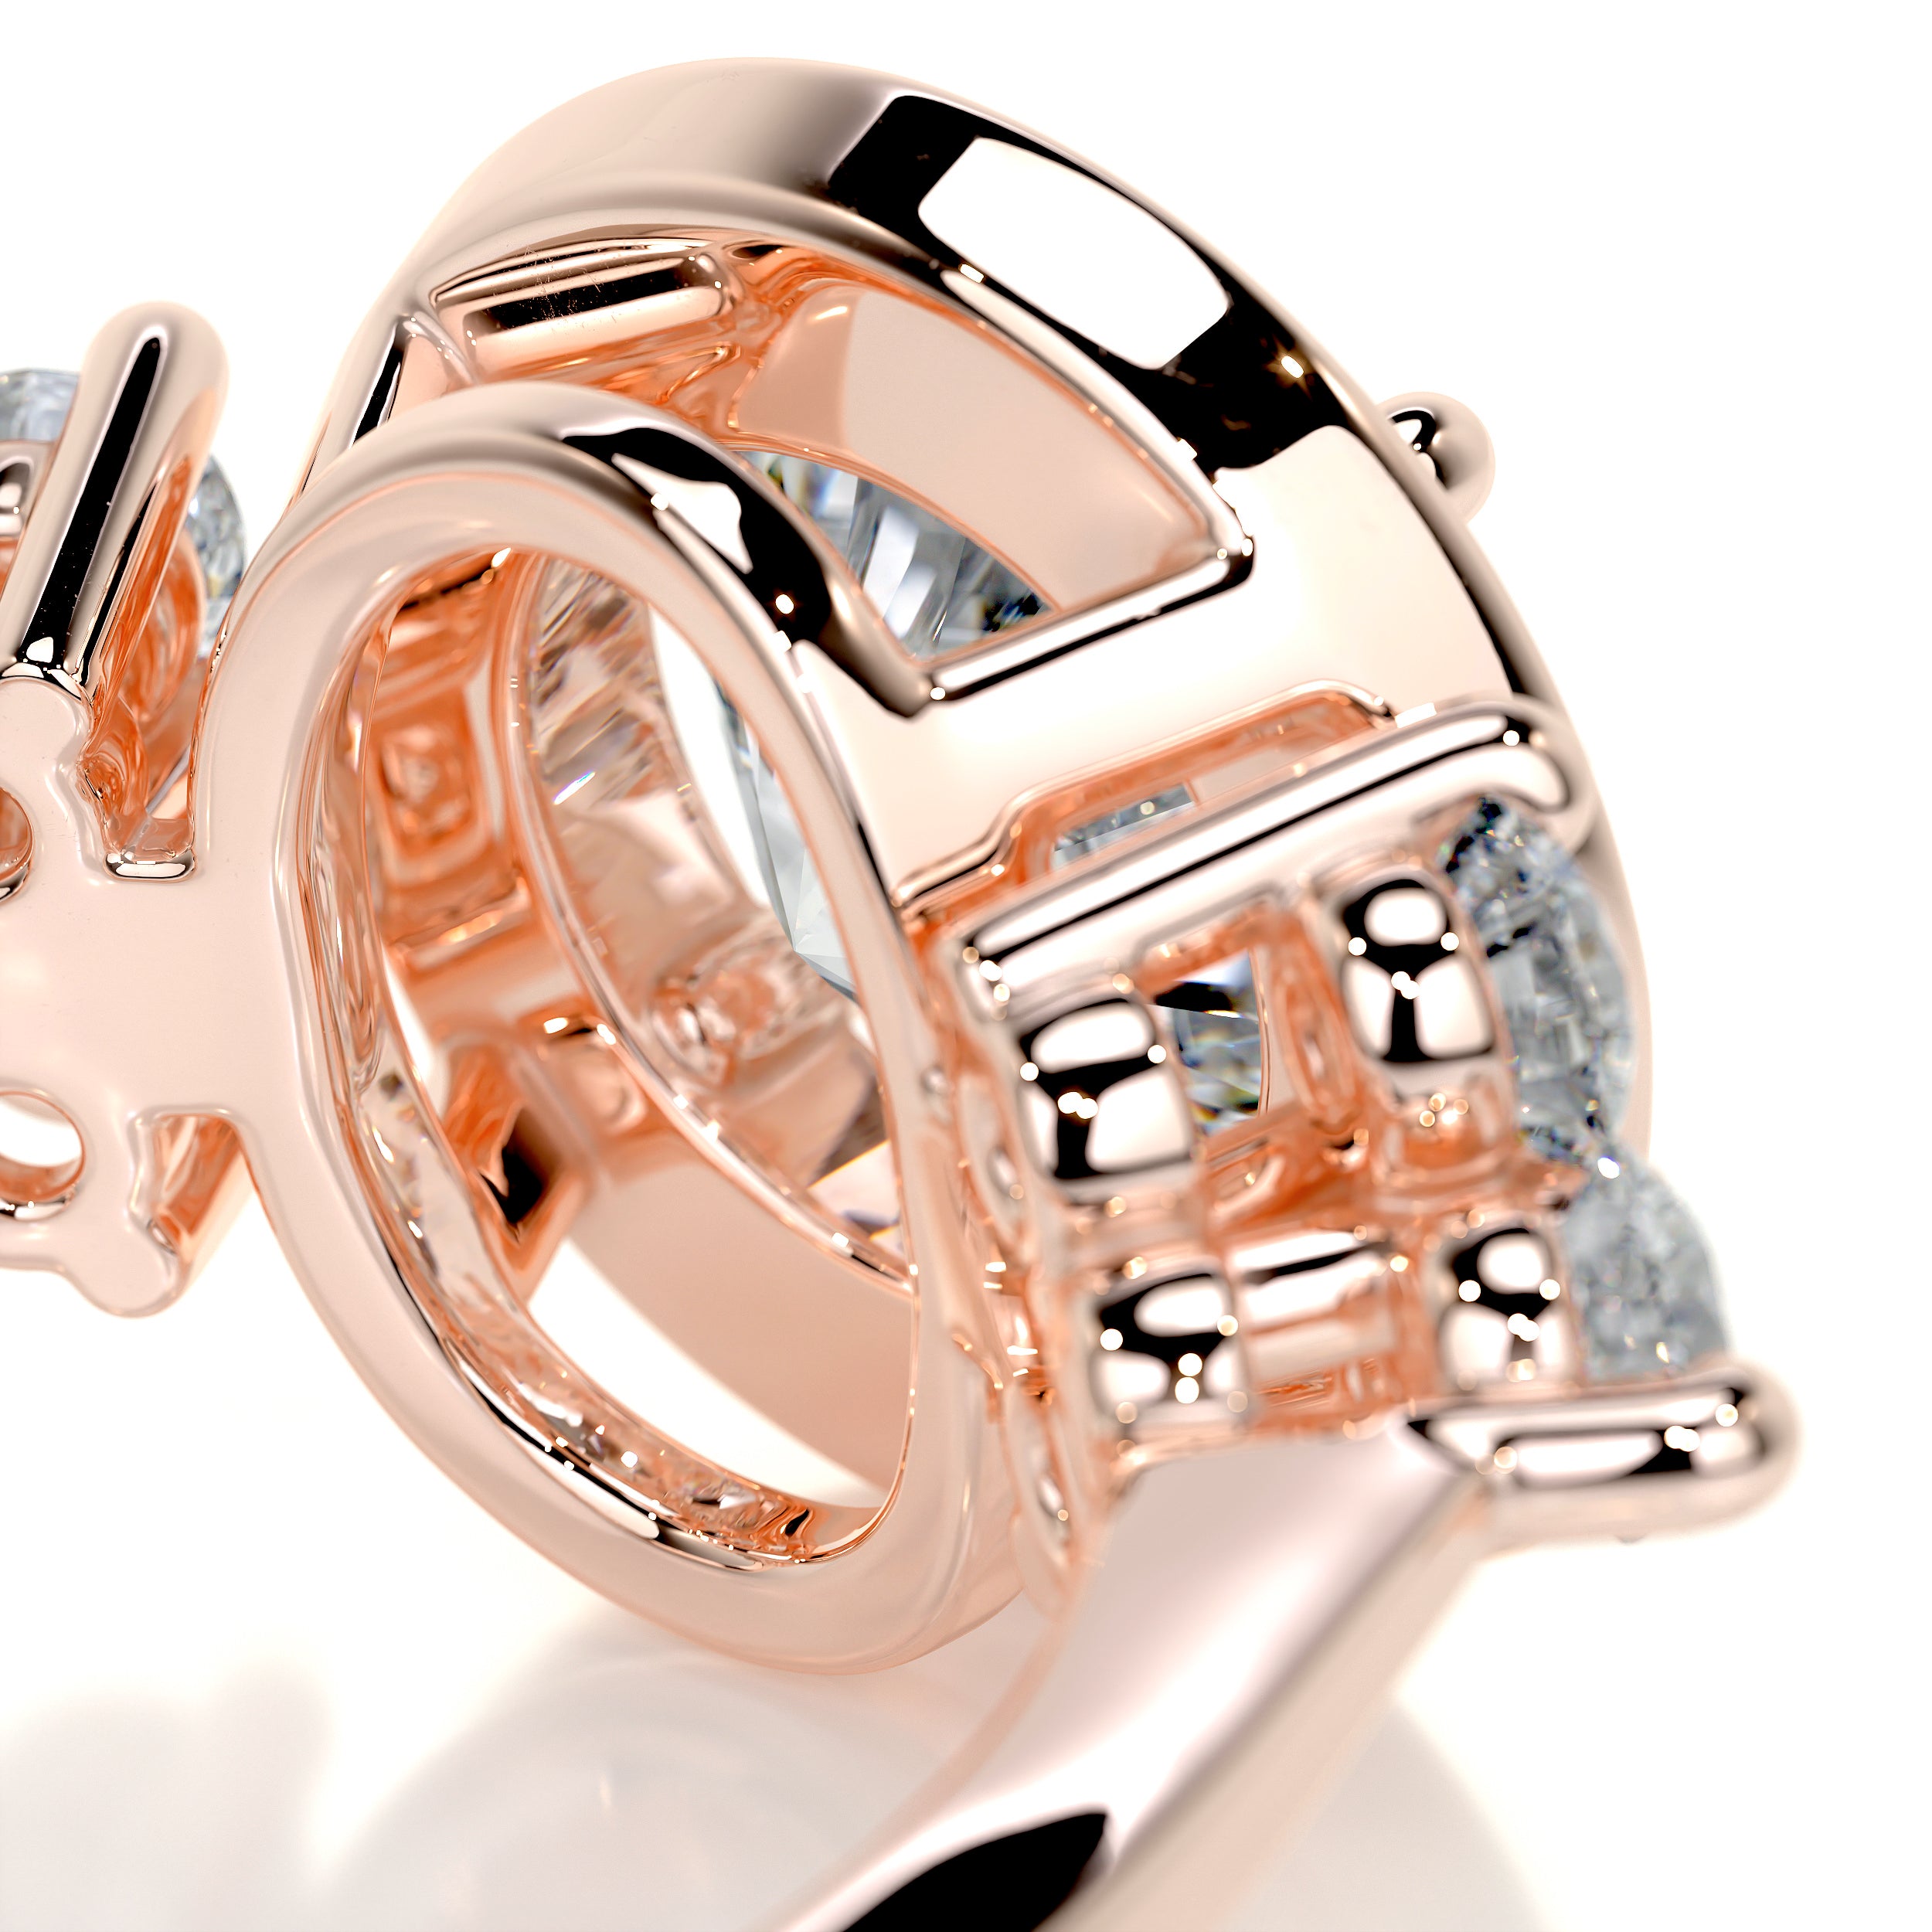 Ivy Vintage Diamond Engagement Ring   (2 Carat) -14K Rose Gold